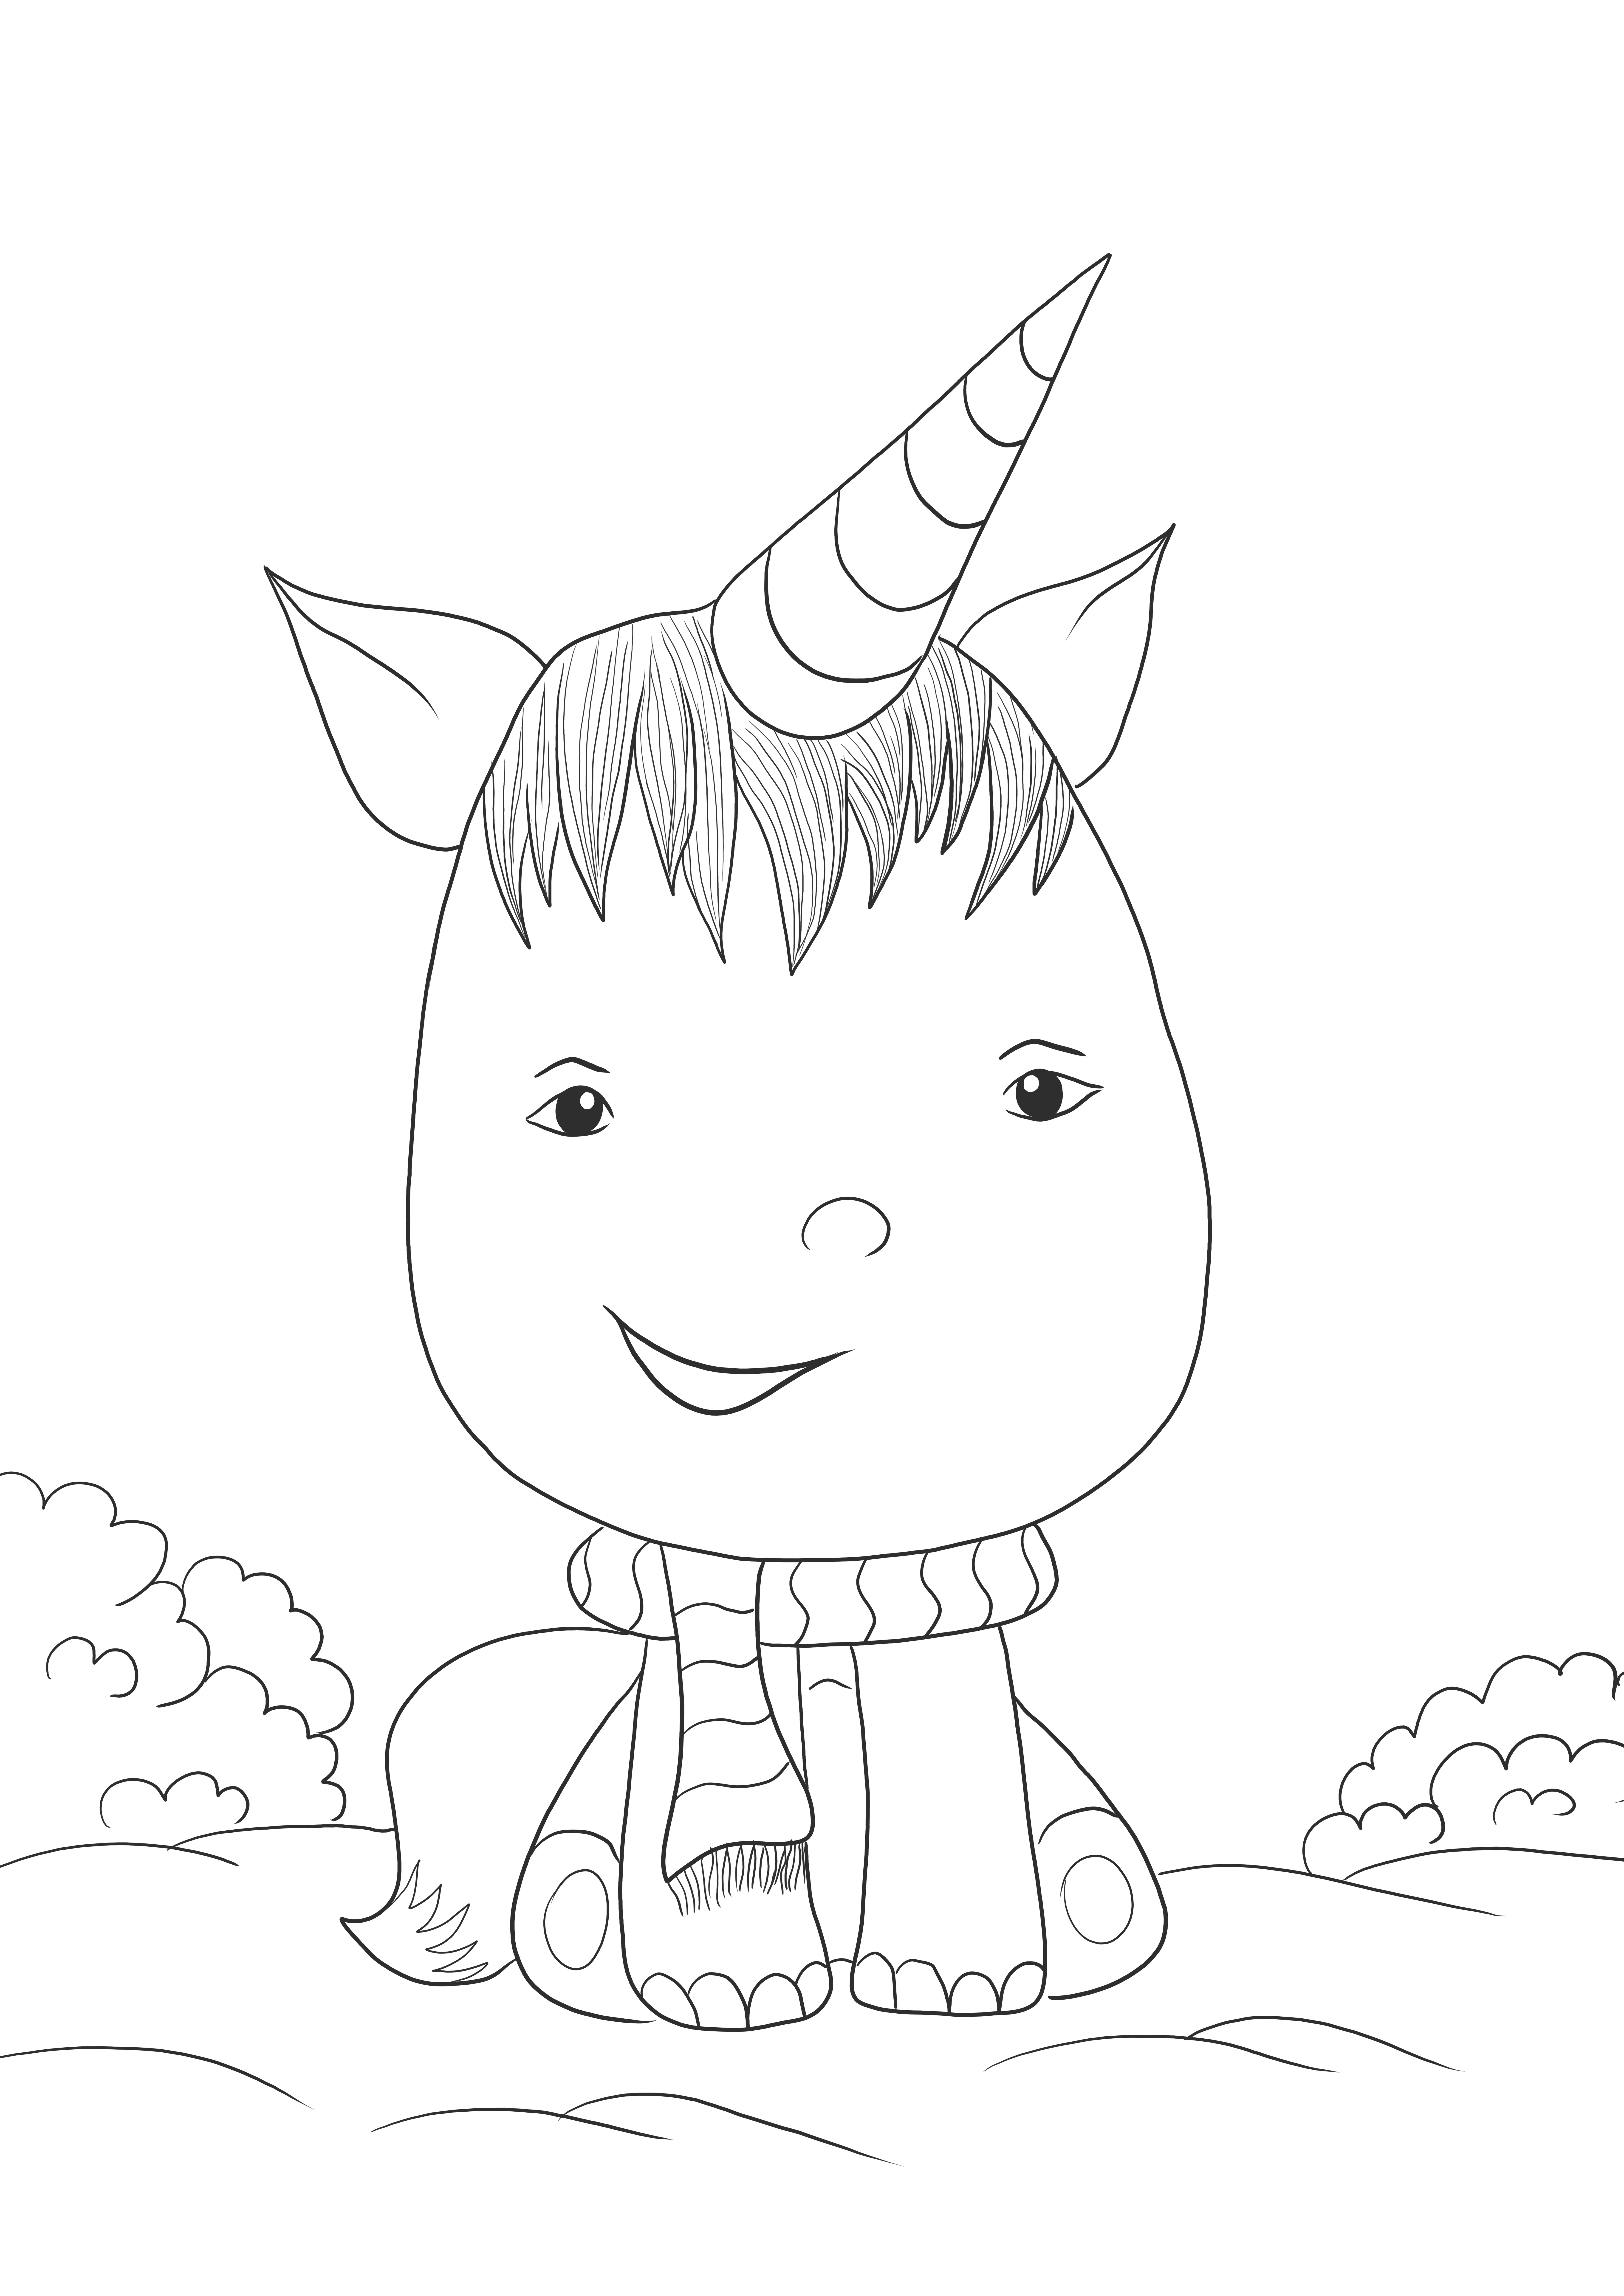 A Kawaii Unicorn ingyenesen letölthető vagy kinyomtatható